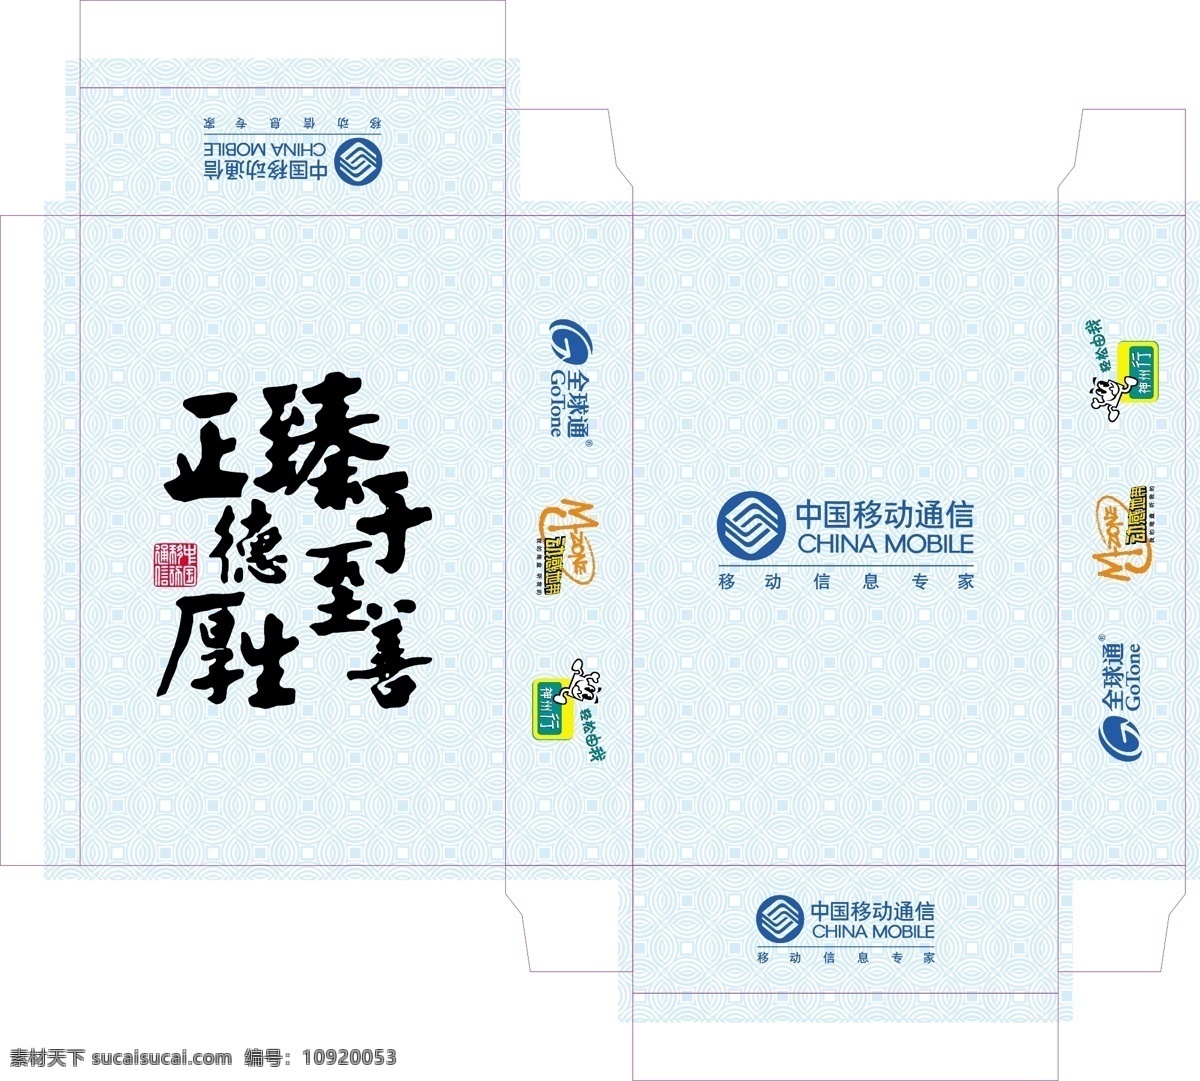 底图 盒子 生活百科 矢量图 中国 中国移动 矢量 模板下载 中国移动盒子 扑克的 扑克背面 扑克盒子 现代科技